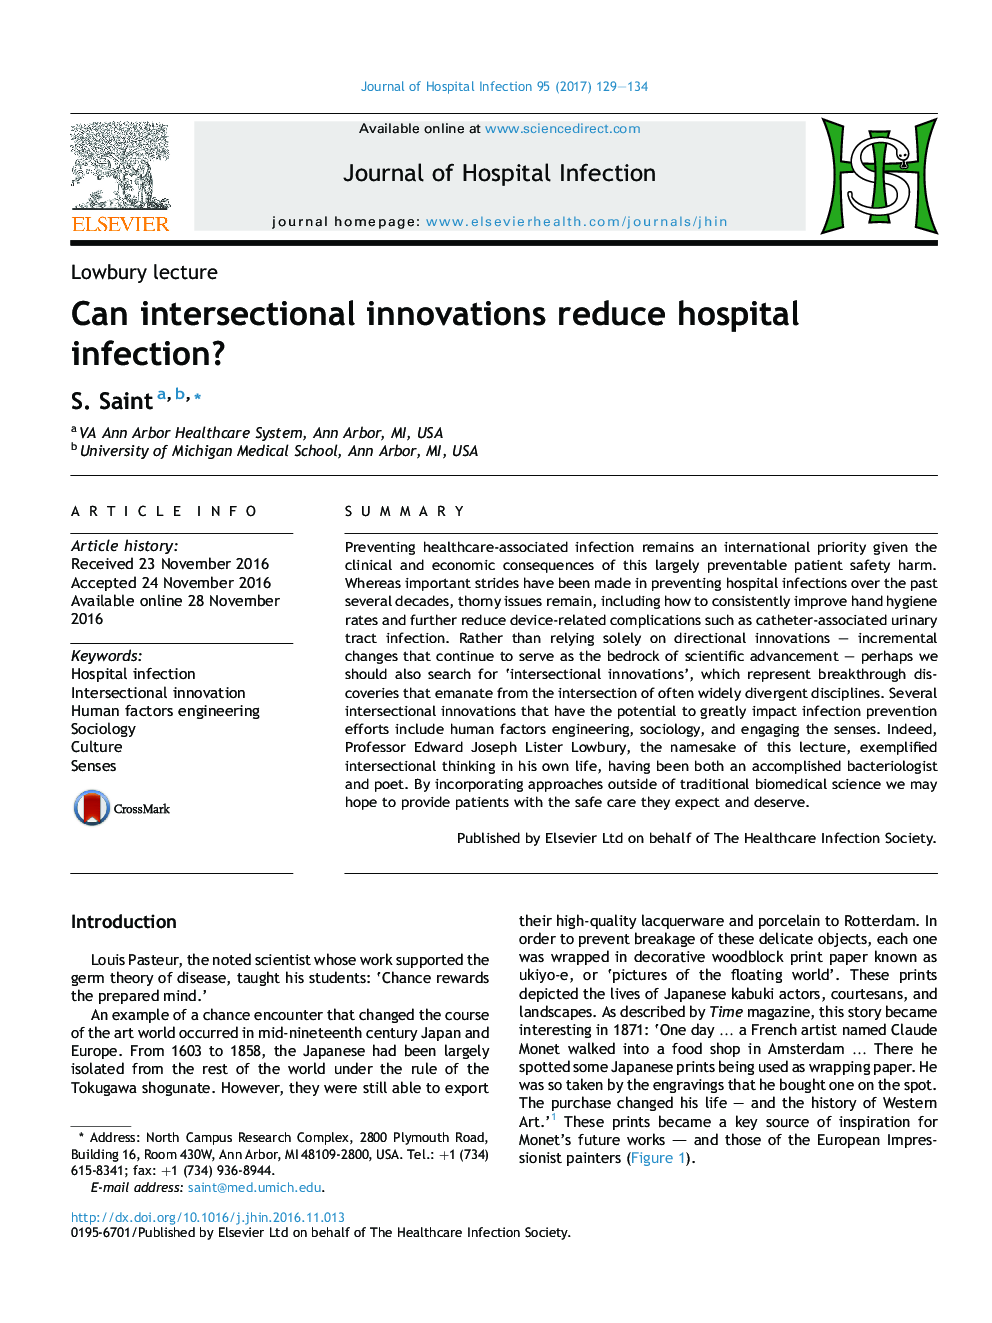 آیا نوآوری های متقاطع می تواند عفونت های بیمارستانی را کاهش دهد؟ 